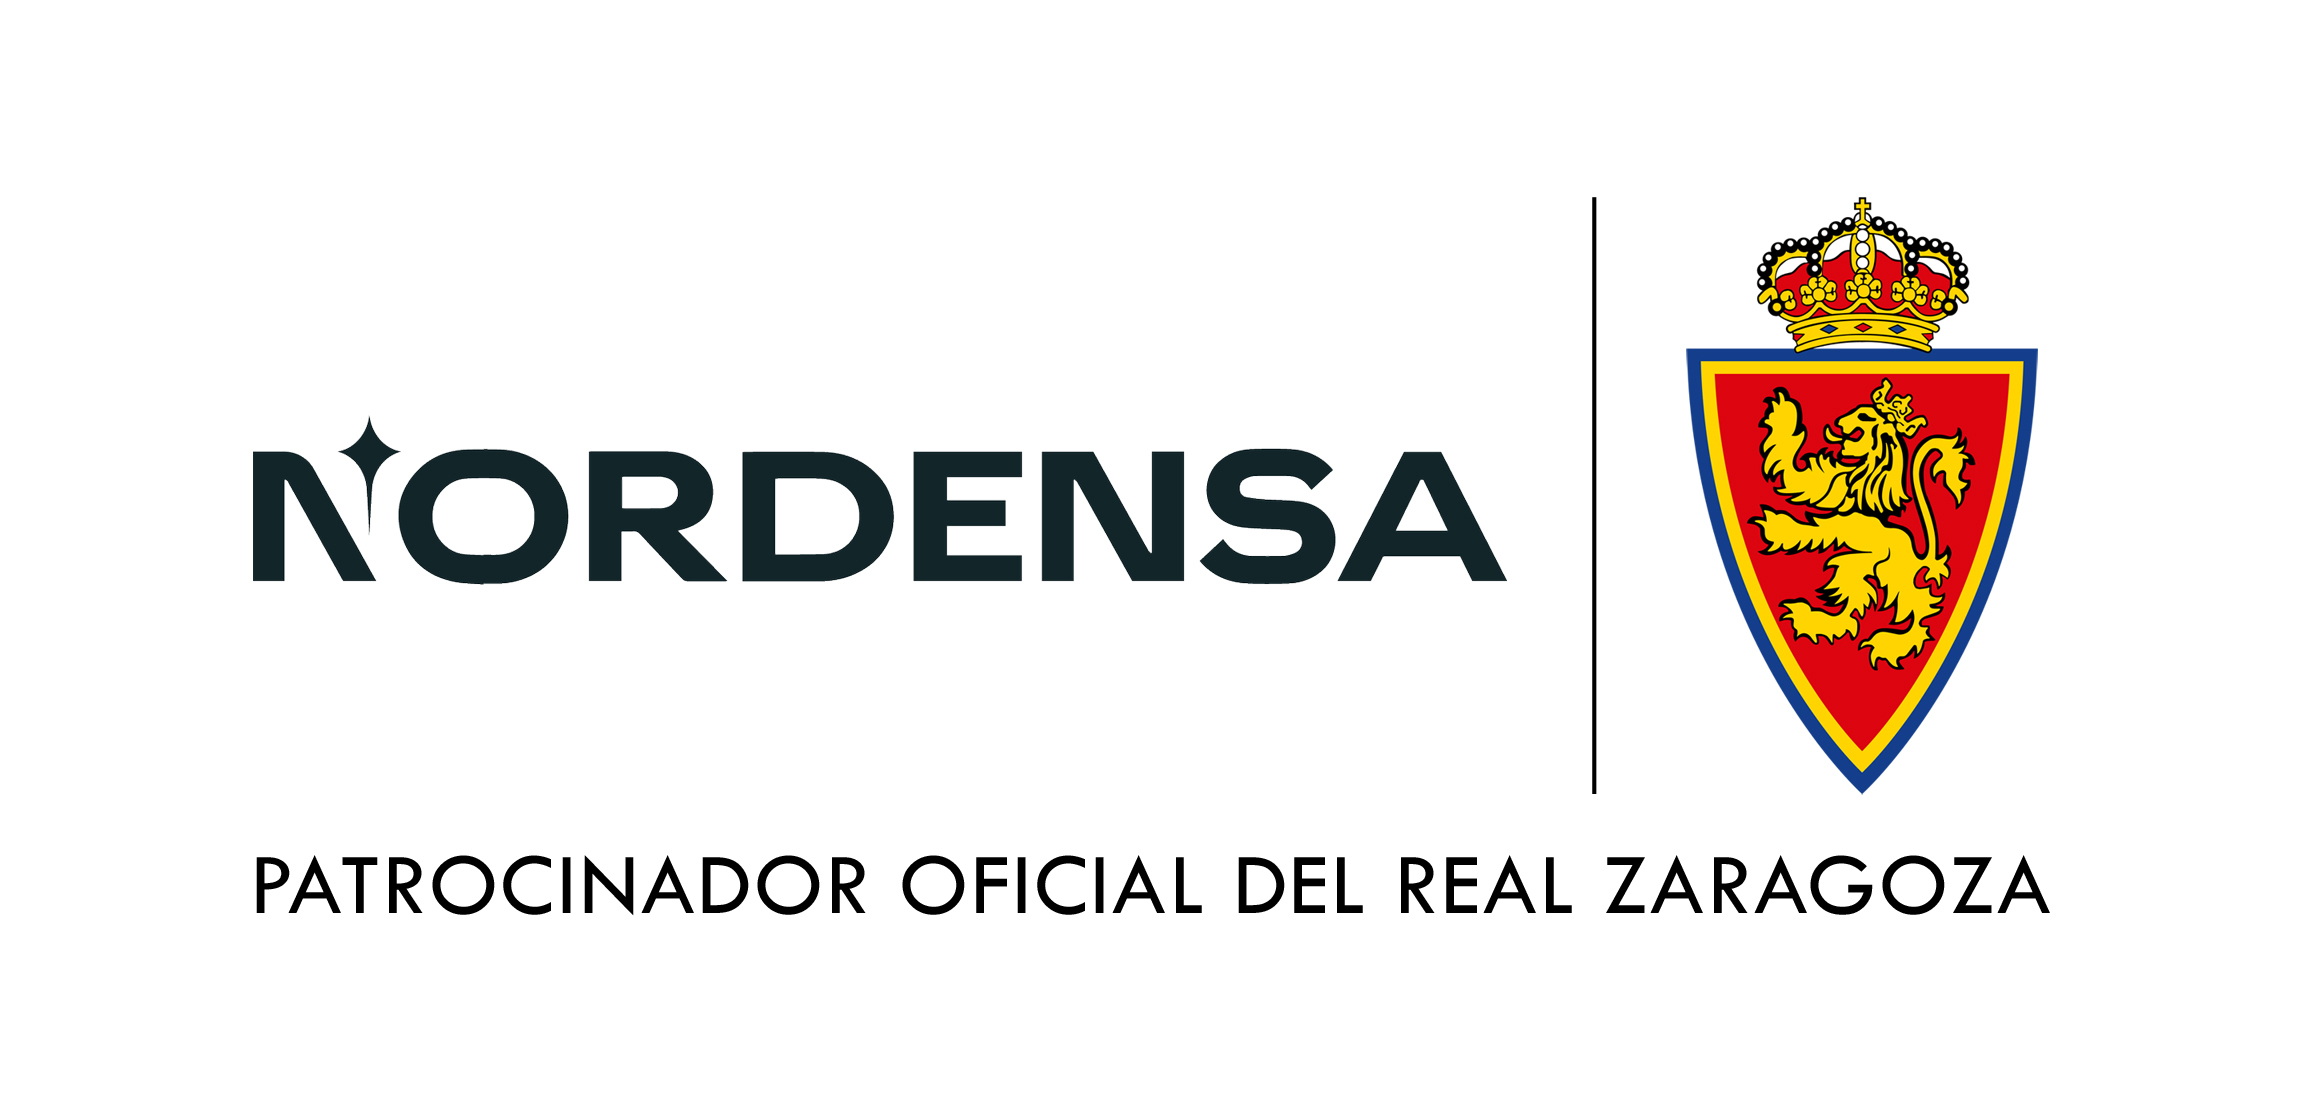 Nordensa, nuevo patrocinador oficial del Real Zaragoza, Real Zaragoza